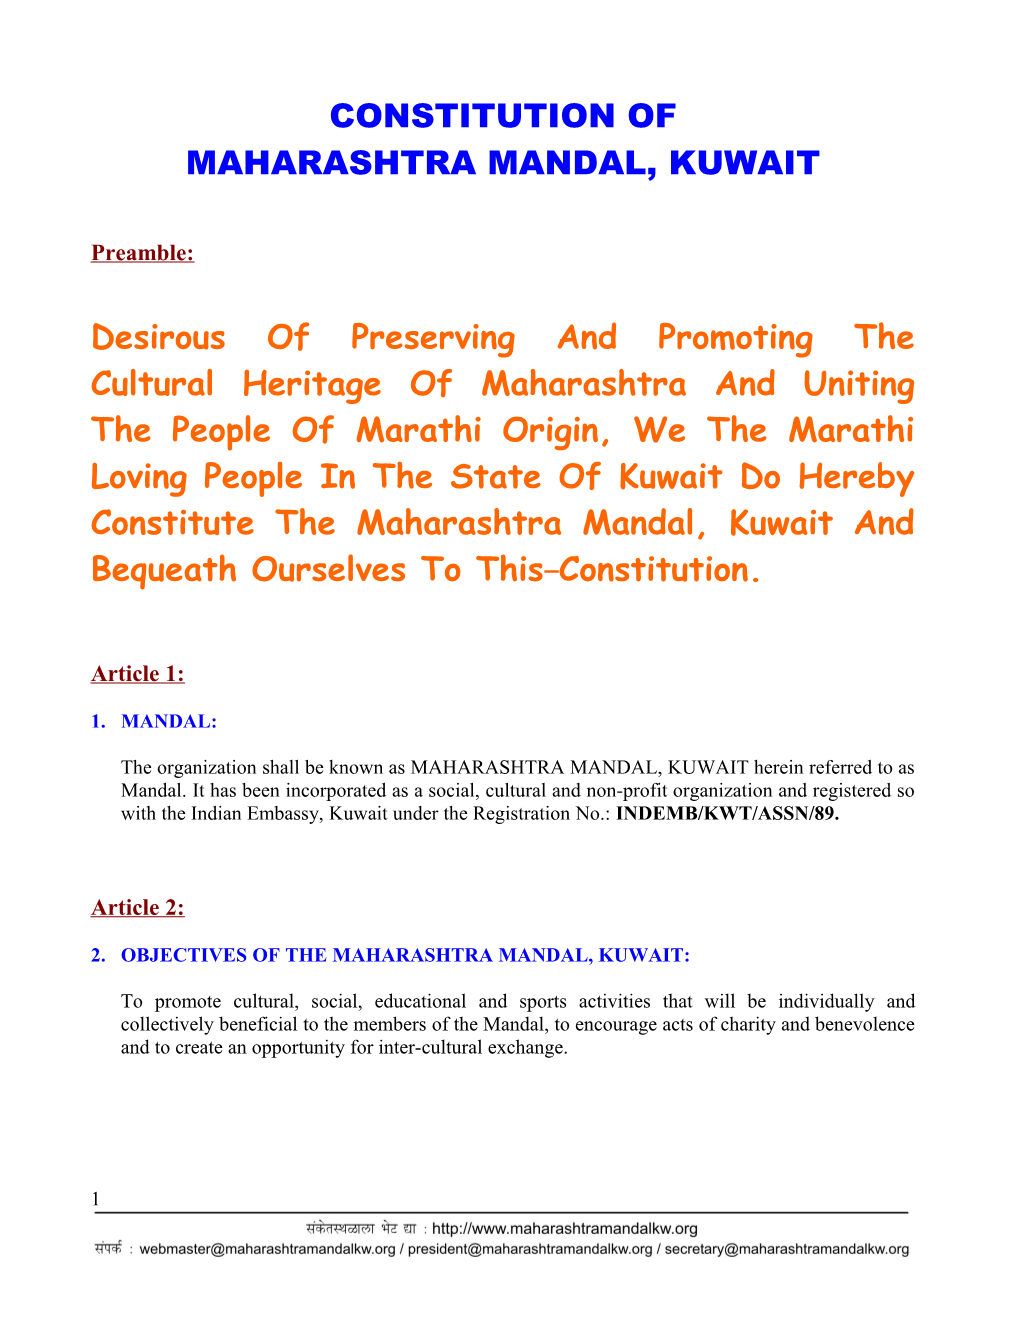 Constitution of Maharashtra Mandal, Kuwait